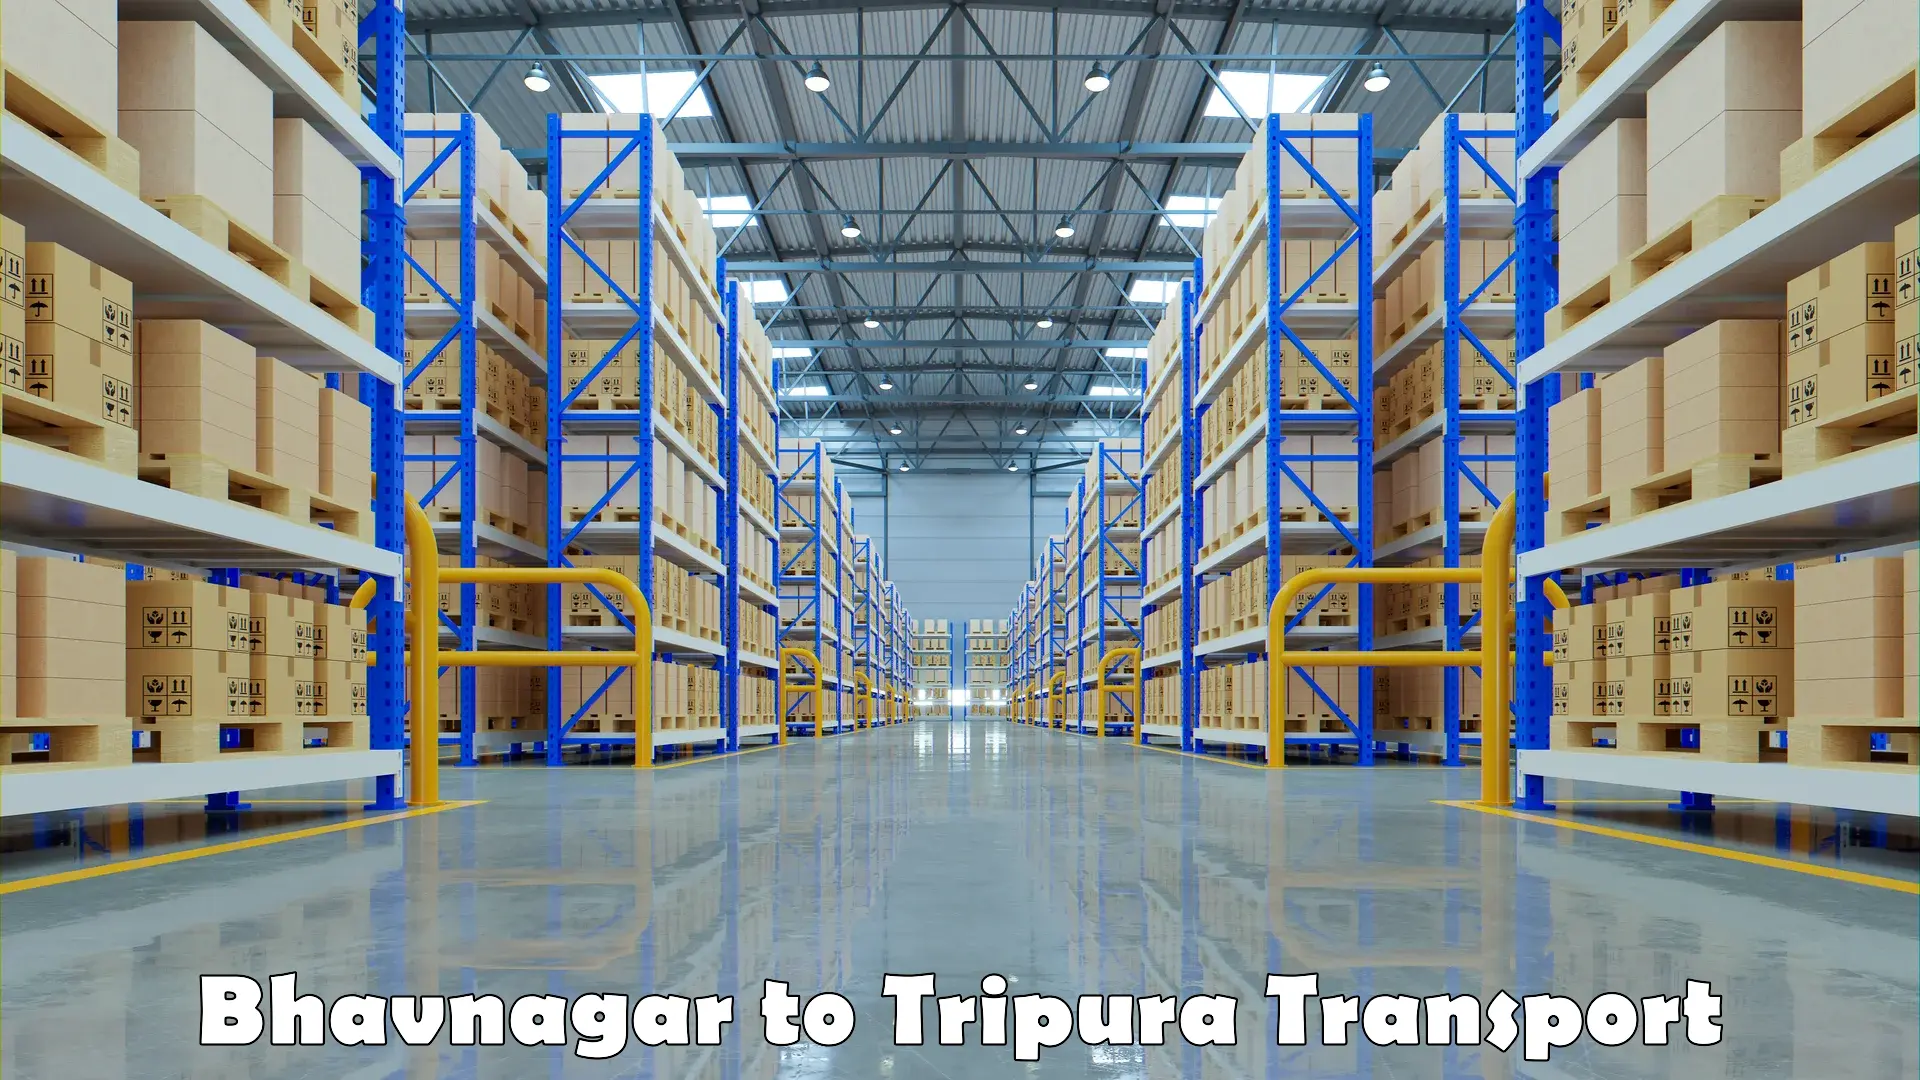 Door to door transport services Bhavnagar to Udaipur Tripura